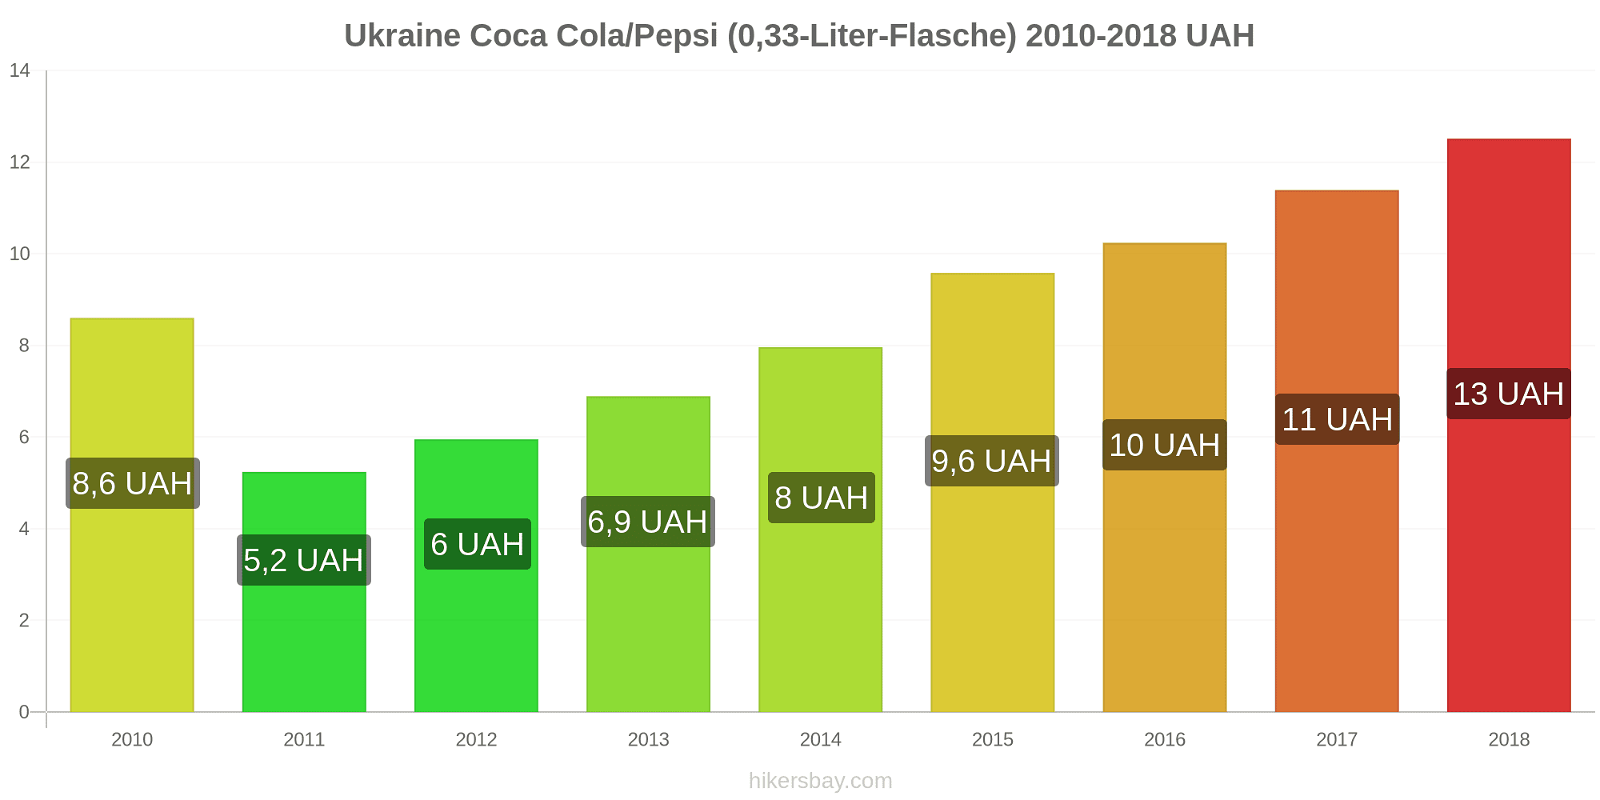 Ukraine Preisänderungen Coke/Pepsi (0,33-Liter-Flasche) hikersbay.com